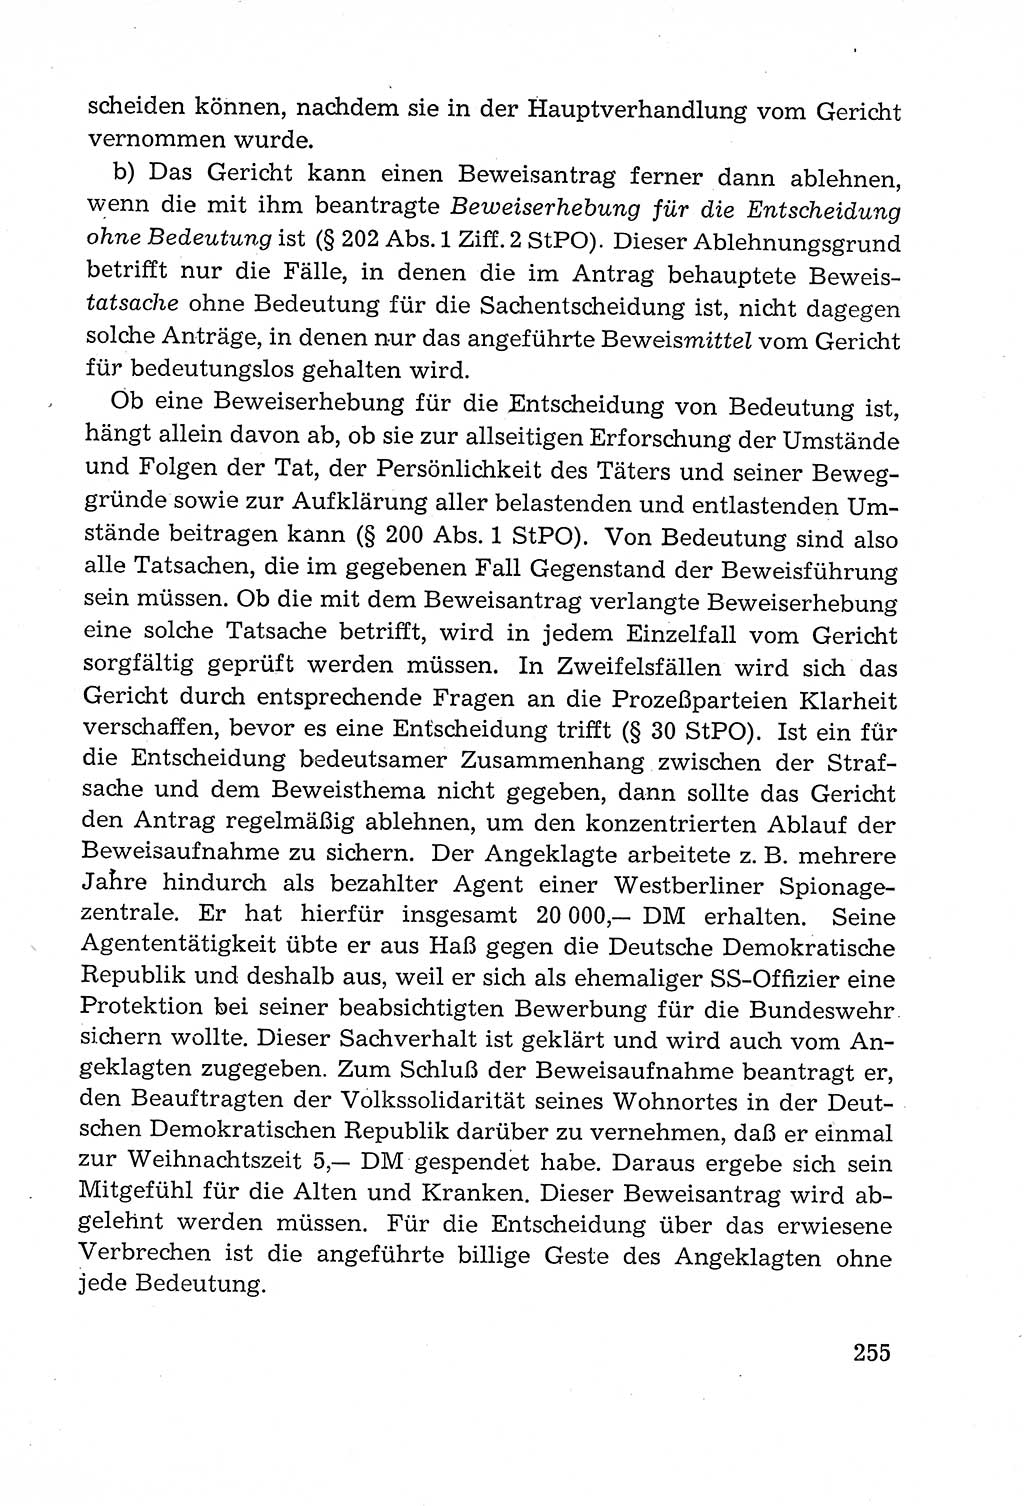 Leitfaden des Strafprozeßrechts der Deutschen Demokratischen Republik (DDR) 1959, Seite 255 (LF StPR DDR 1959, S. 255)